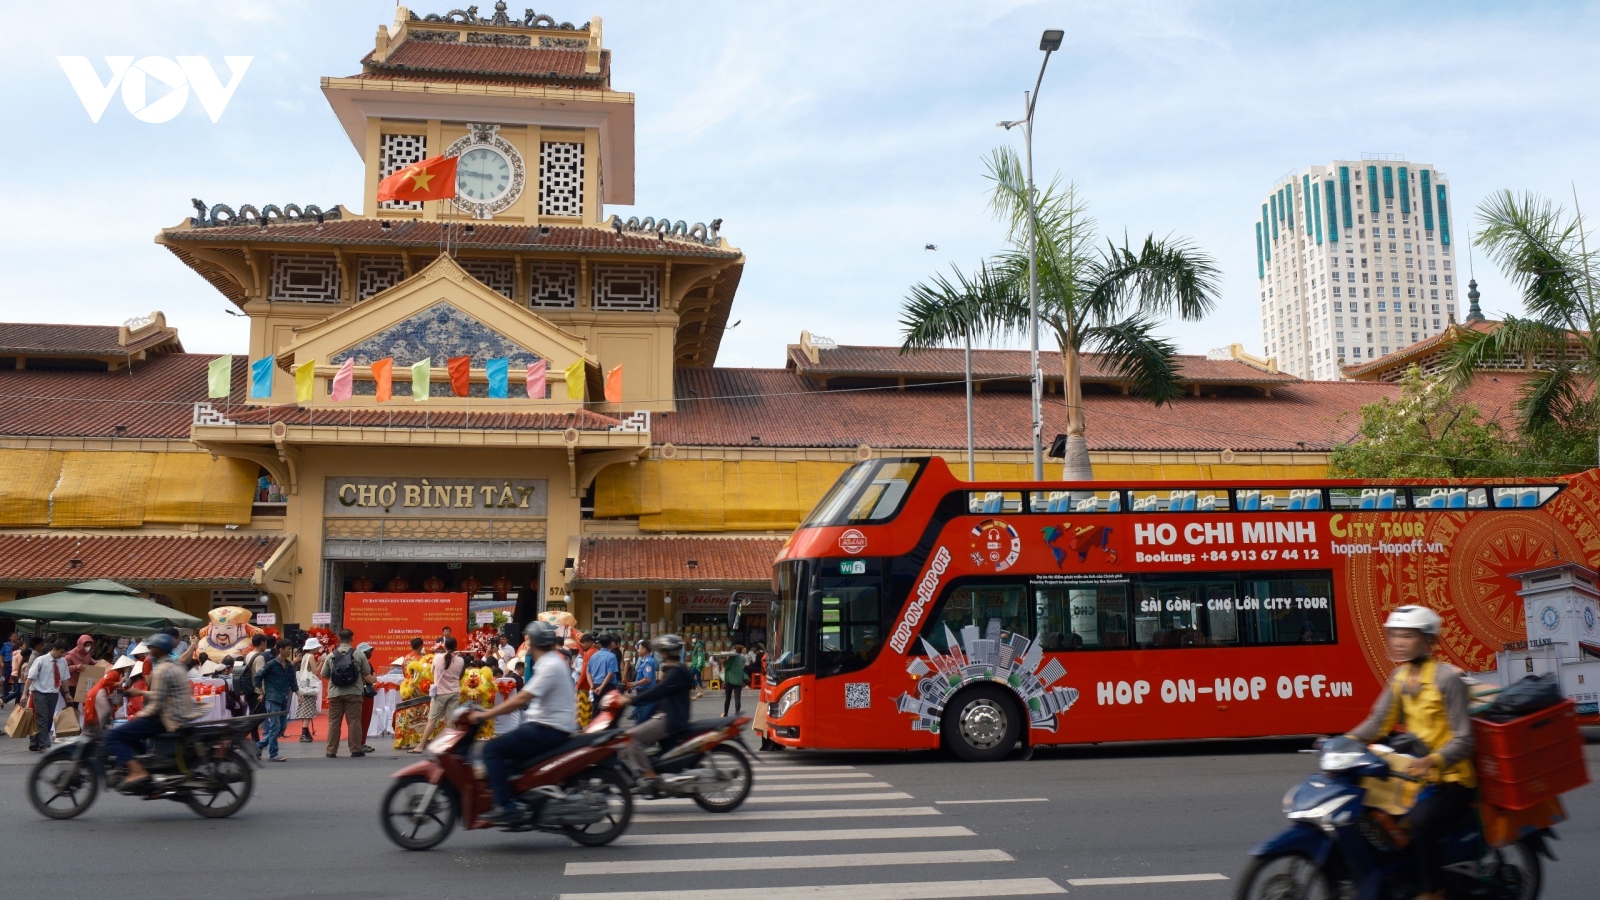 Trải nghiệm văn hóa Việt – Hoa giữa lòng TP.HCM trên xe buýt 2 tầng